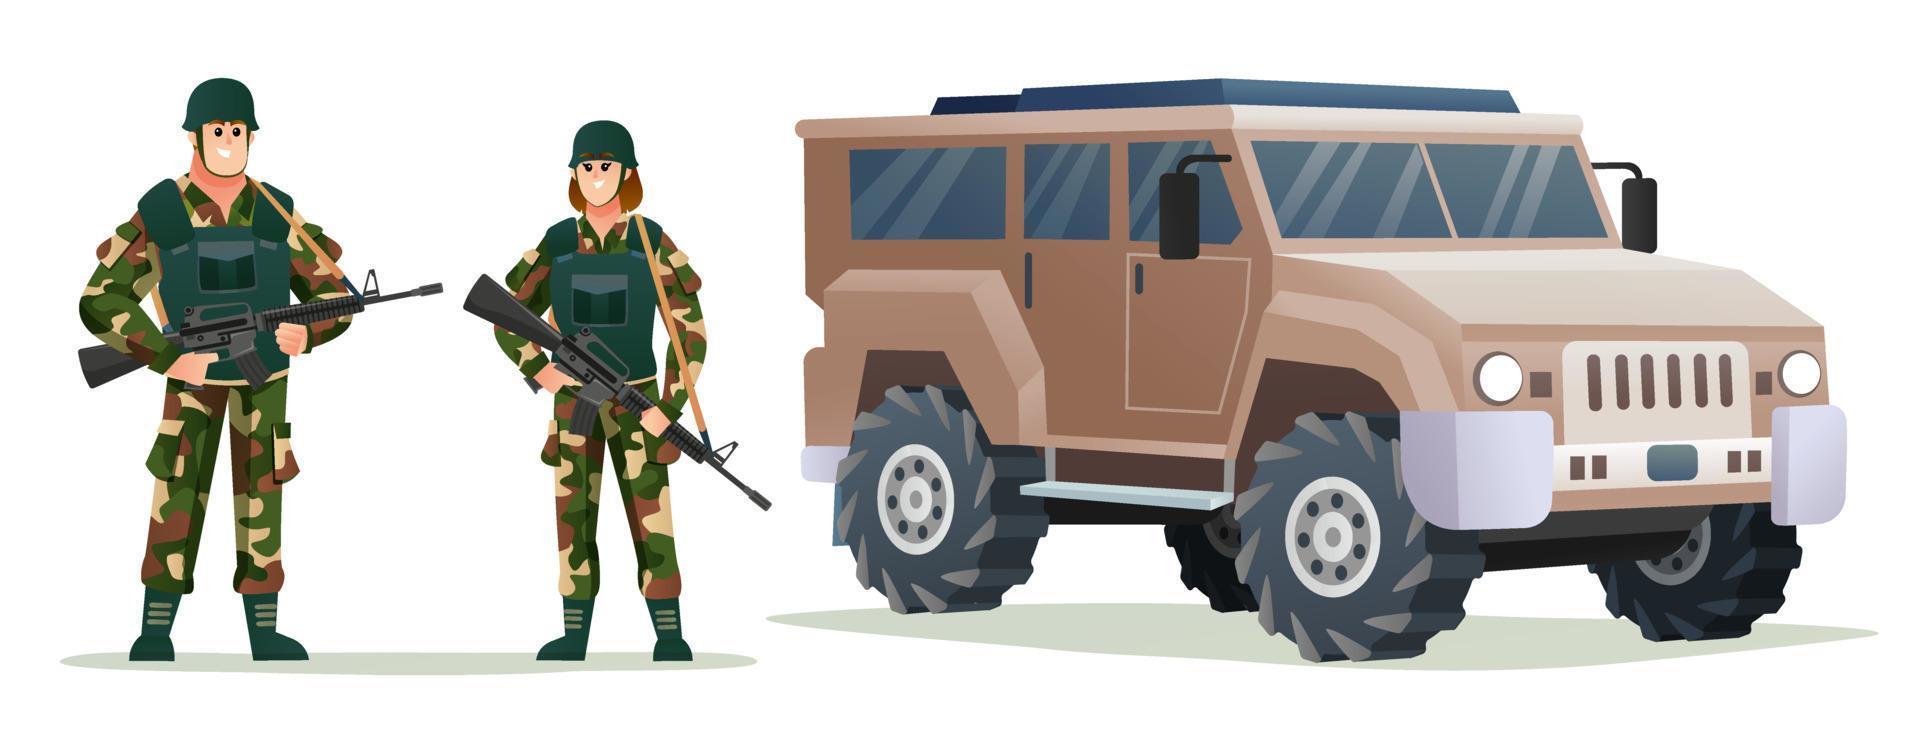 soldados do exército homem e mulher segurando armas de armas com ilustração de desenho animado de veículo militar vetor